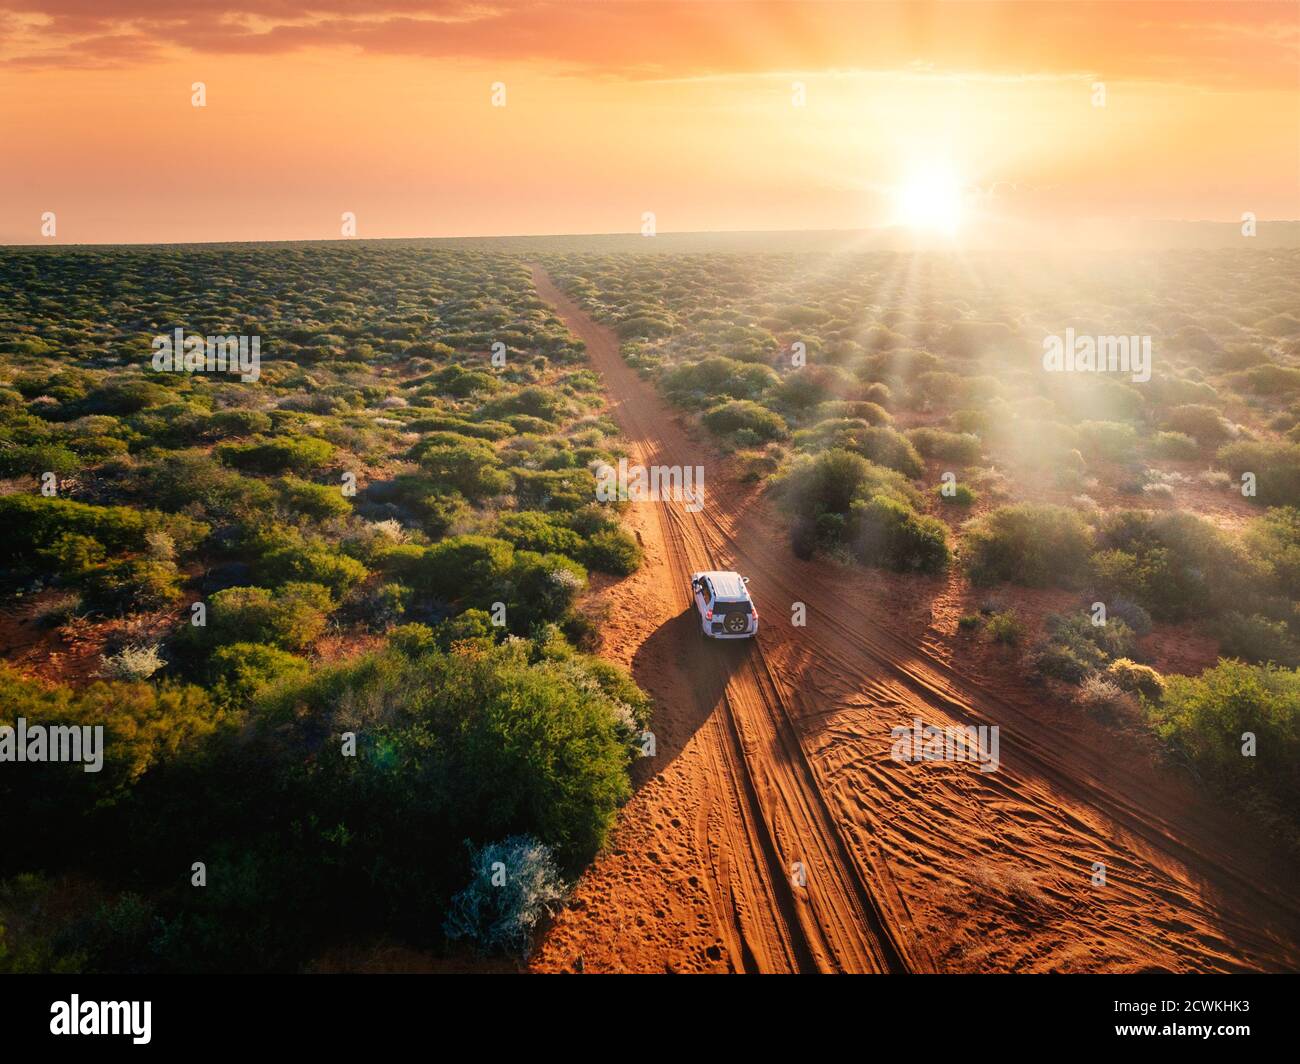 Australien, roter Sand unbefestigte Straße und 4x4 bei Sonnenuntergang, Freiheit Outback Stockfoto